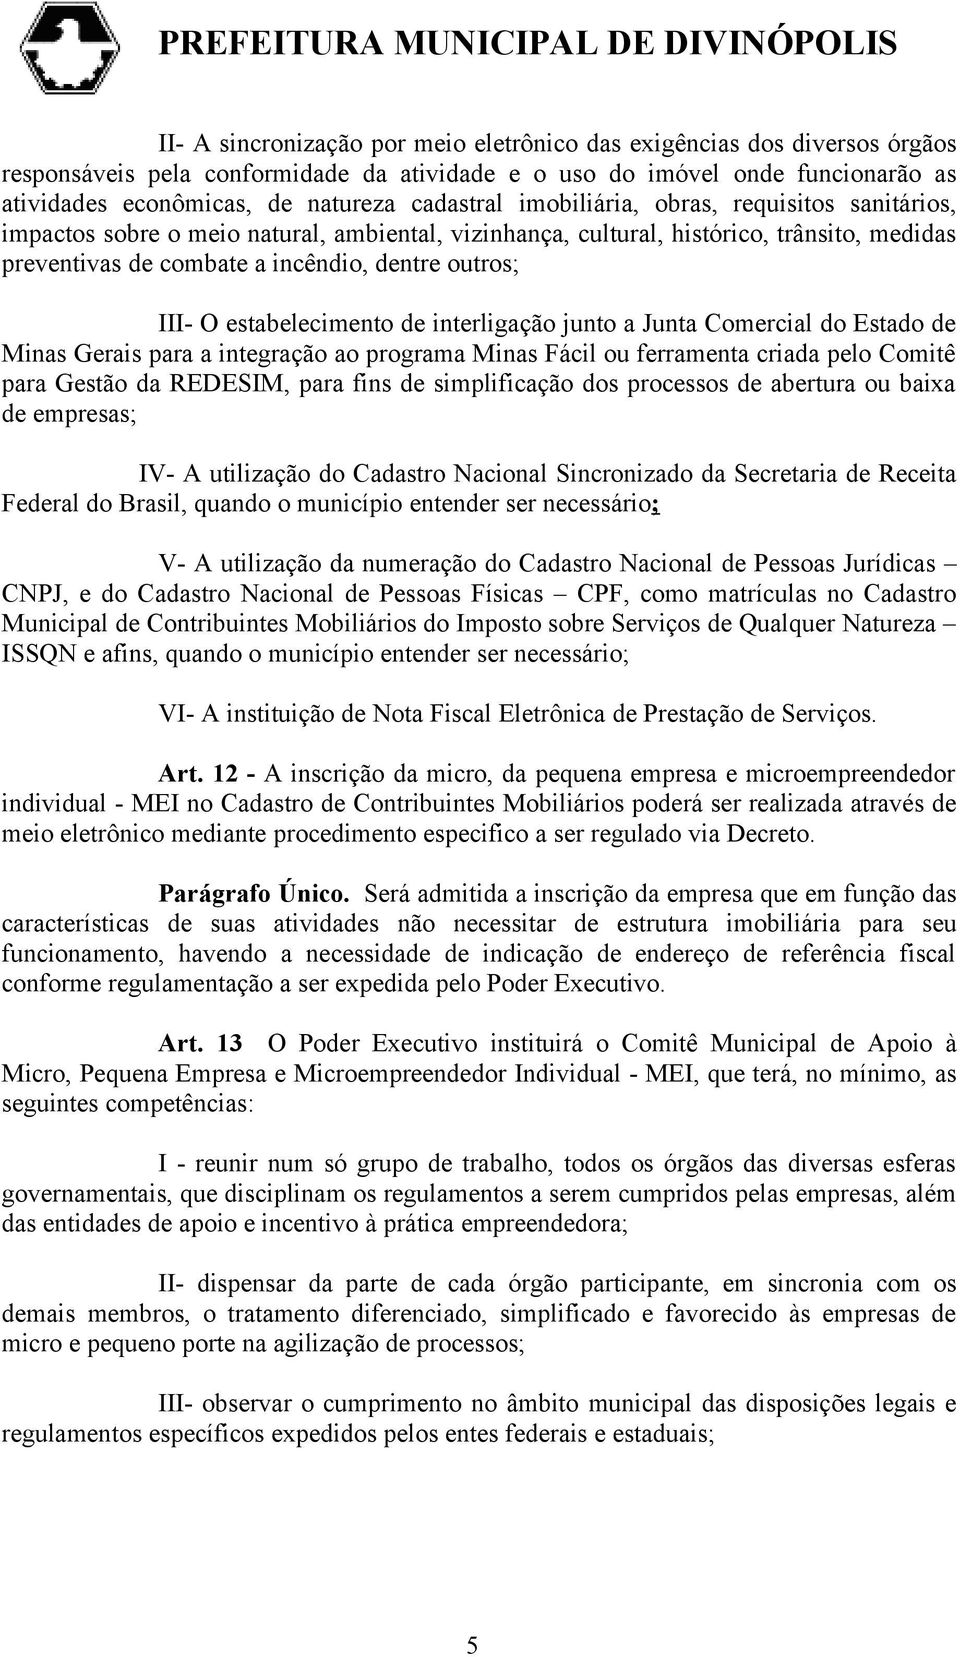 III- O estabelecimento de interligação junto a Junta Comercial do Estado de Minas Gerais para a integração ao programa Minas Fácil ou ferramenta criada pelo Comitê para Gestão da REDESIM, para fins